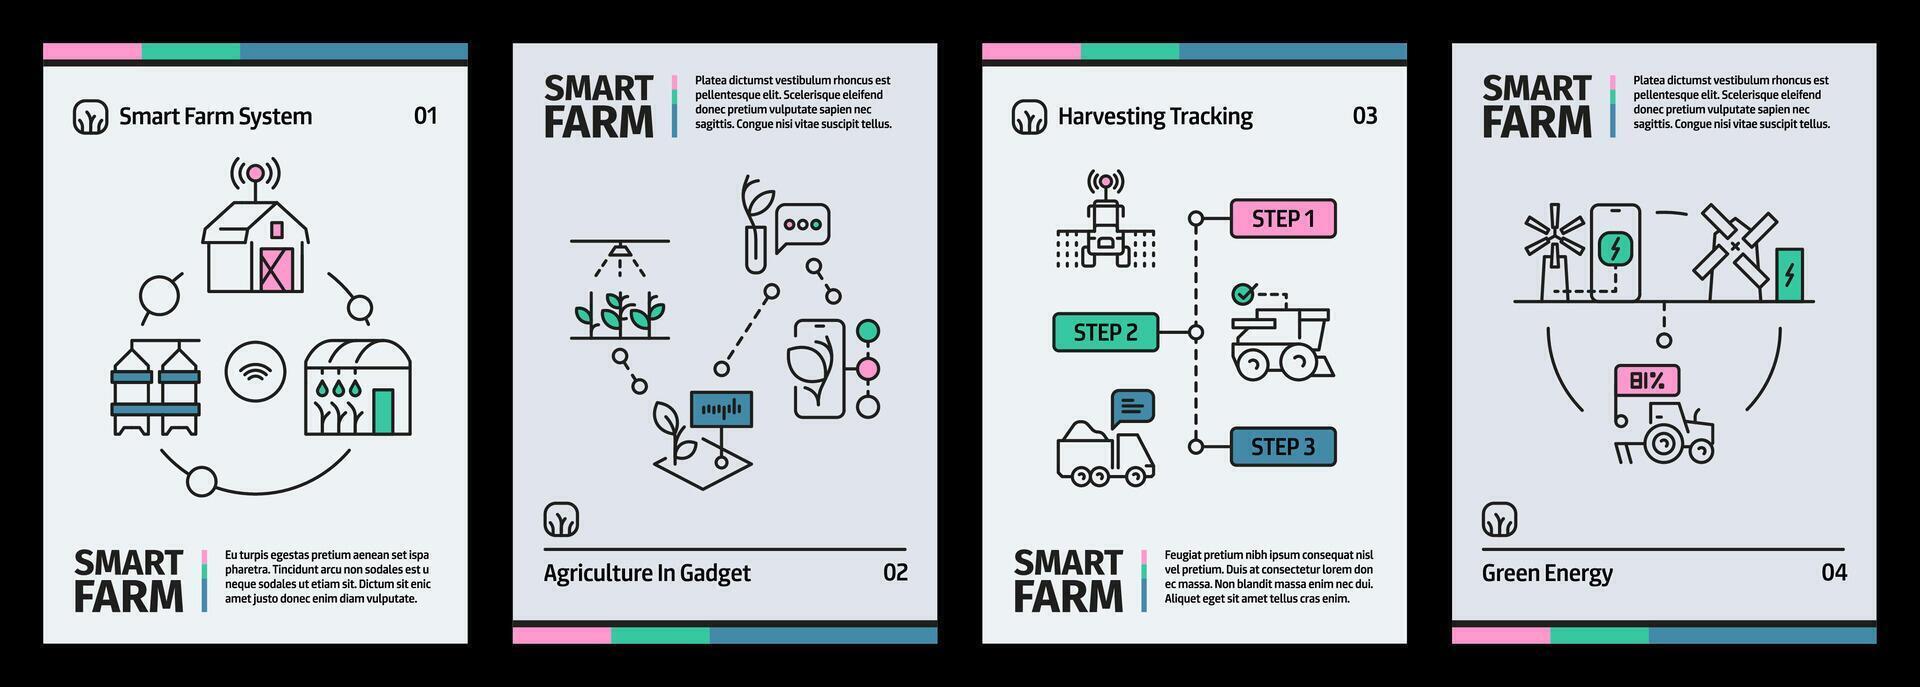 smart bruka baner. organisk lantbruk begrepp med robot Drönare och gps teknologi, jordbruk Drönare program häfte. vektor illustration